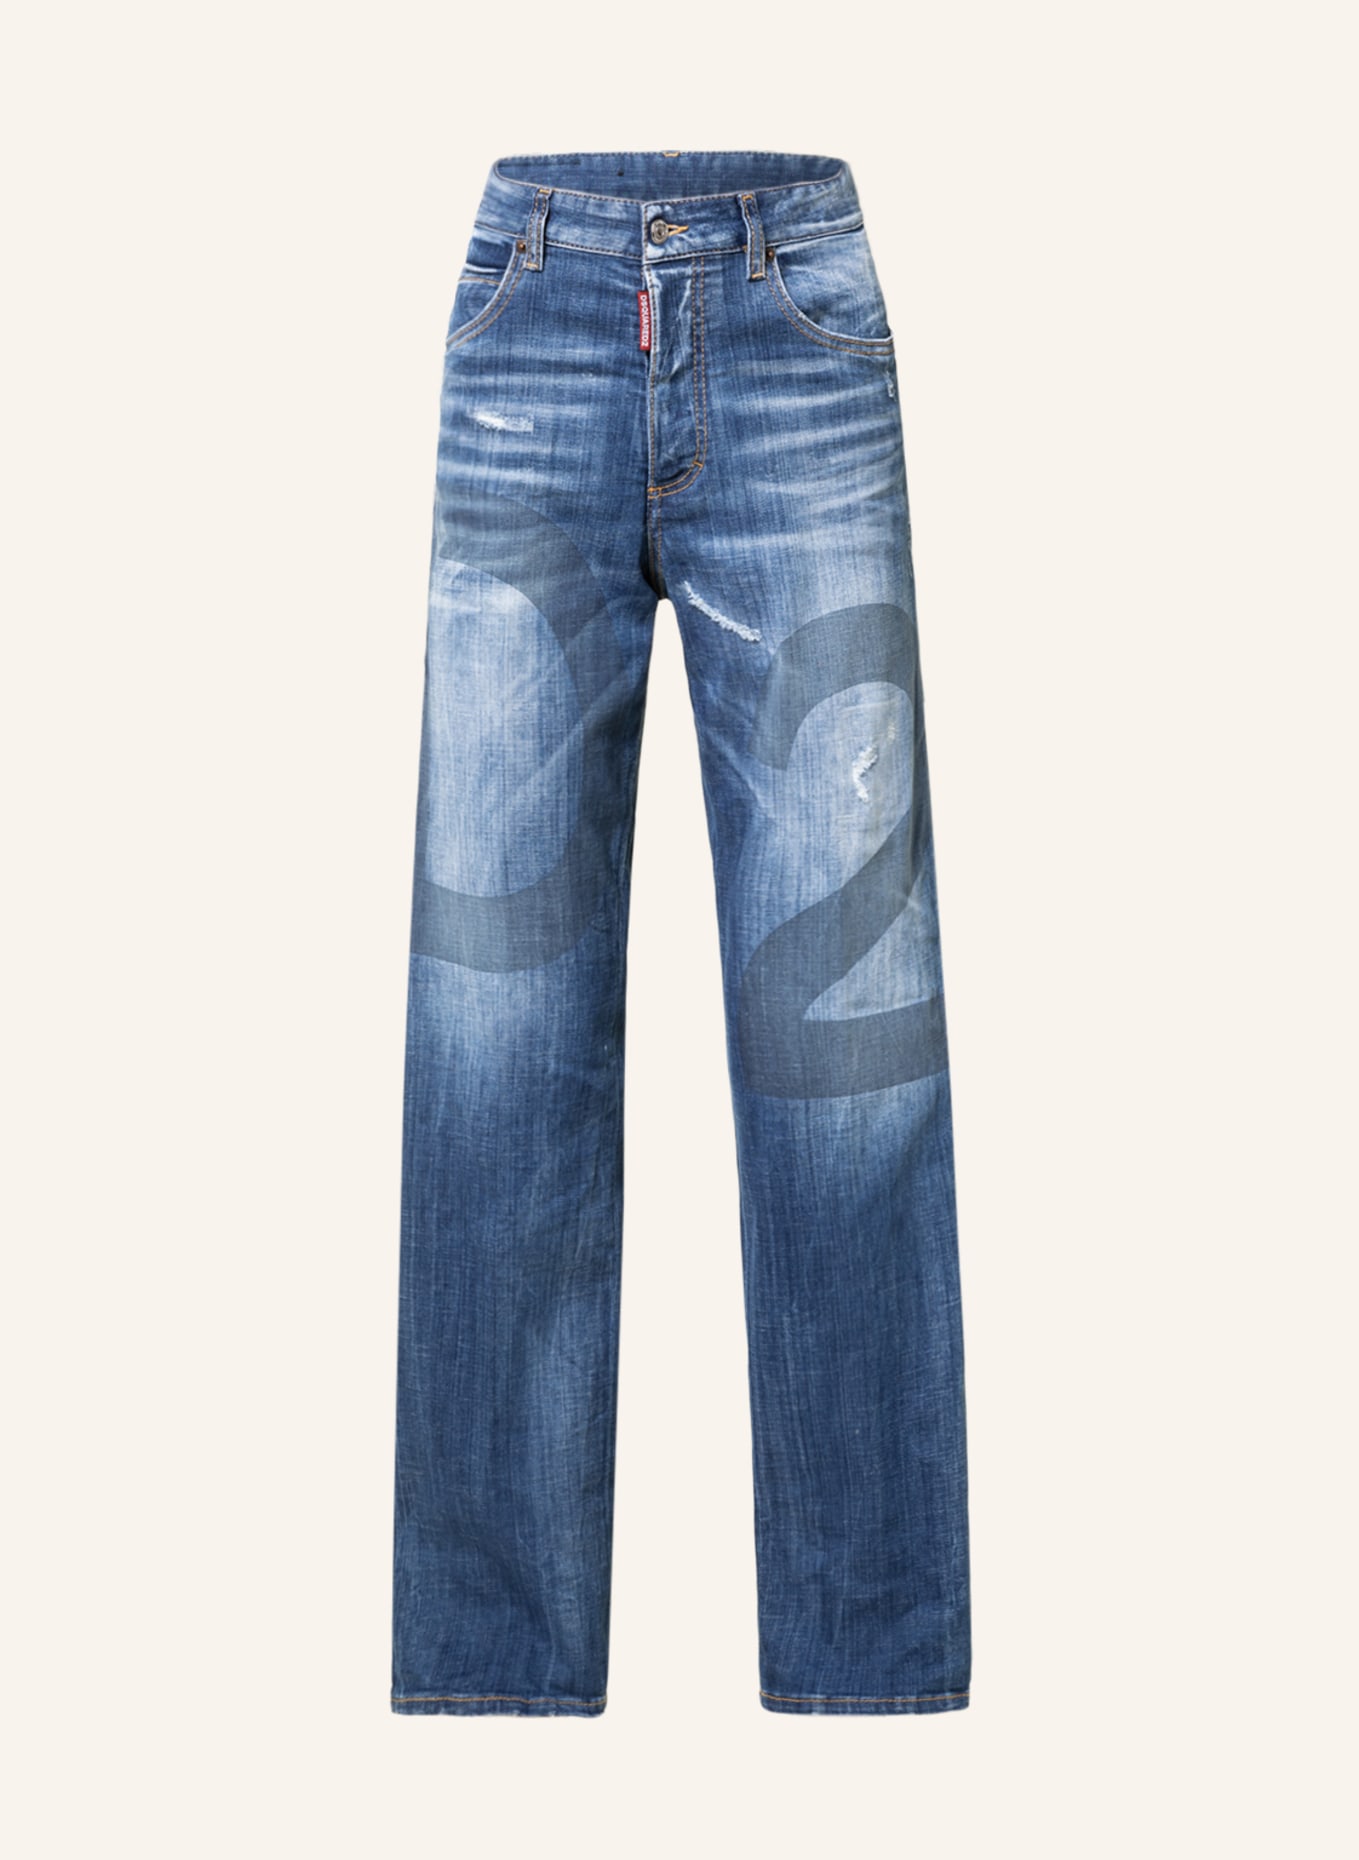 Dsquared2 wide-leg jeans - Blue